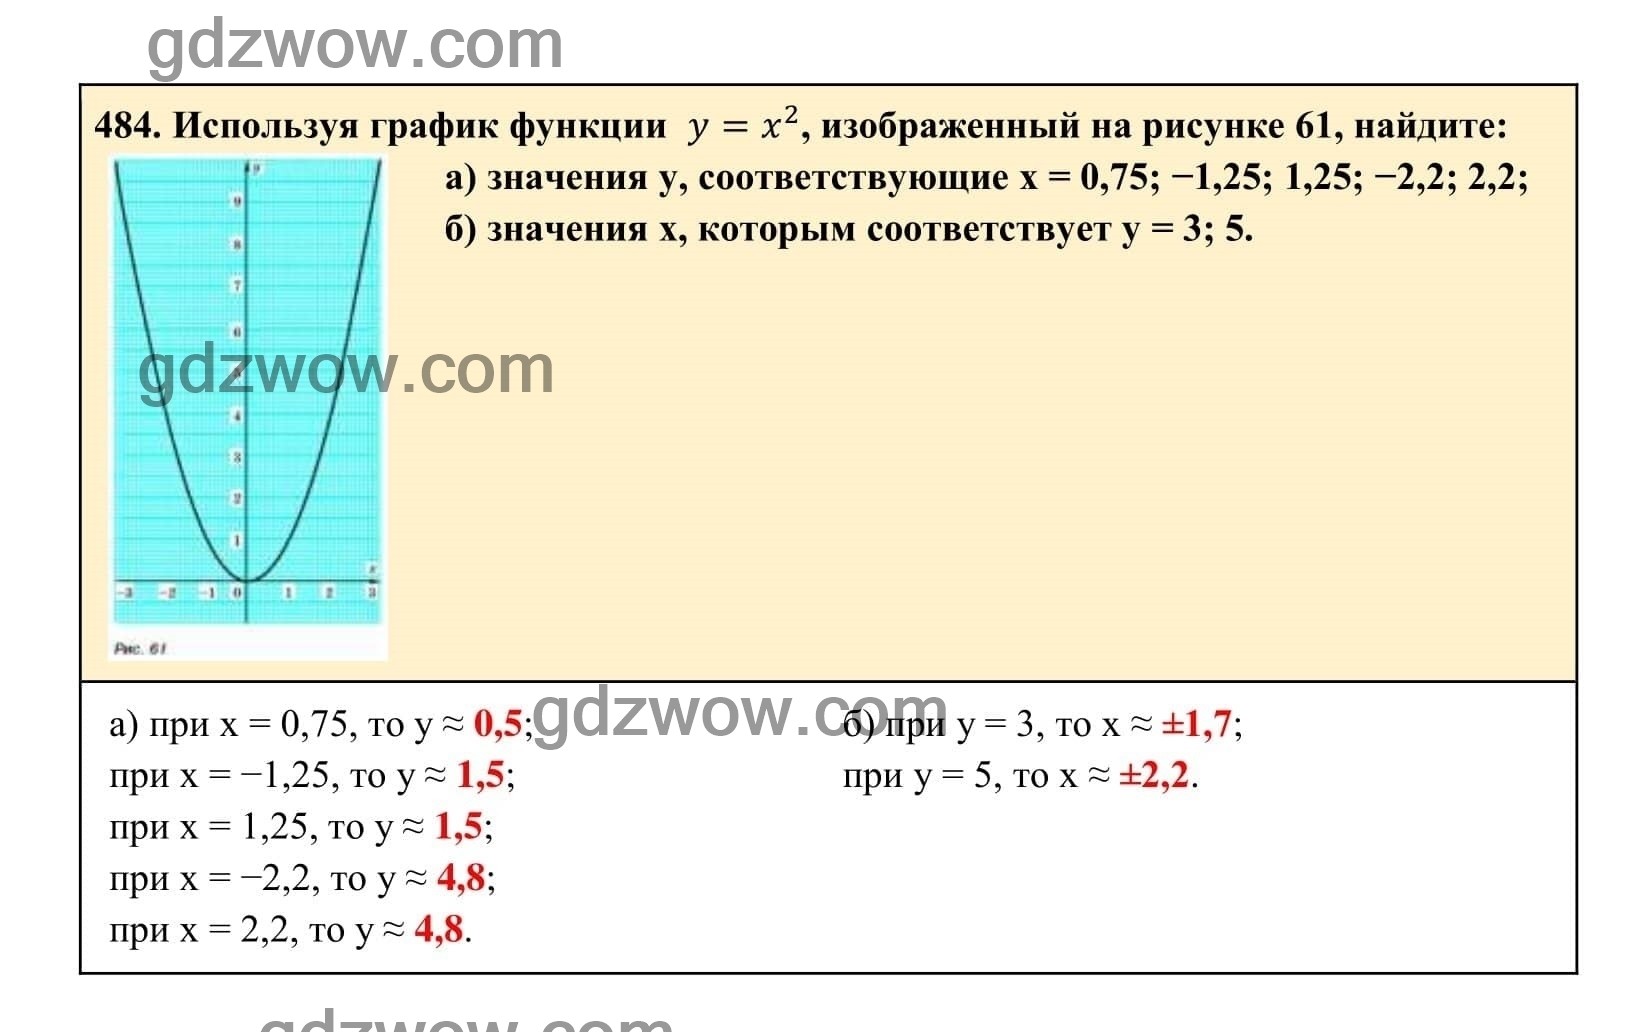 Упражнение 484 - ГДЗ по Алгебре 7 класс Учебник Макарычев (решебник) - GDZwow